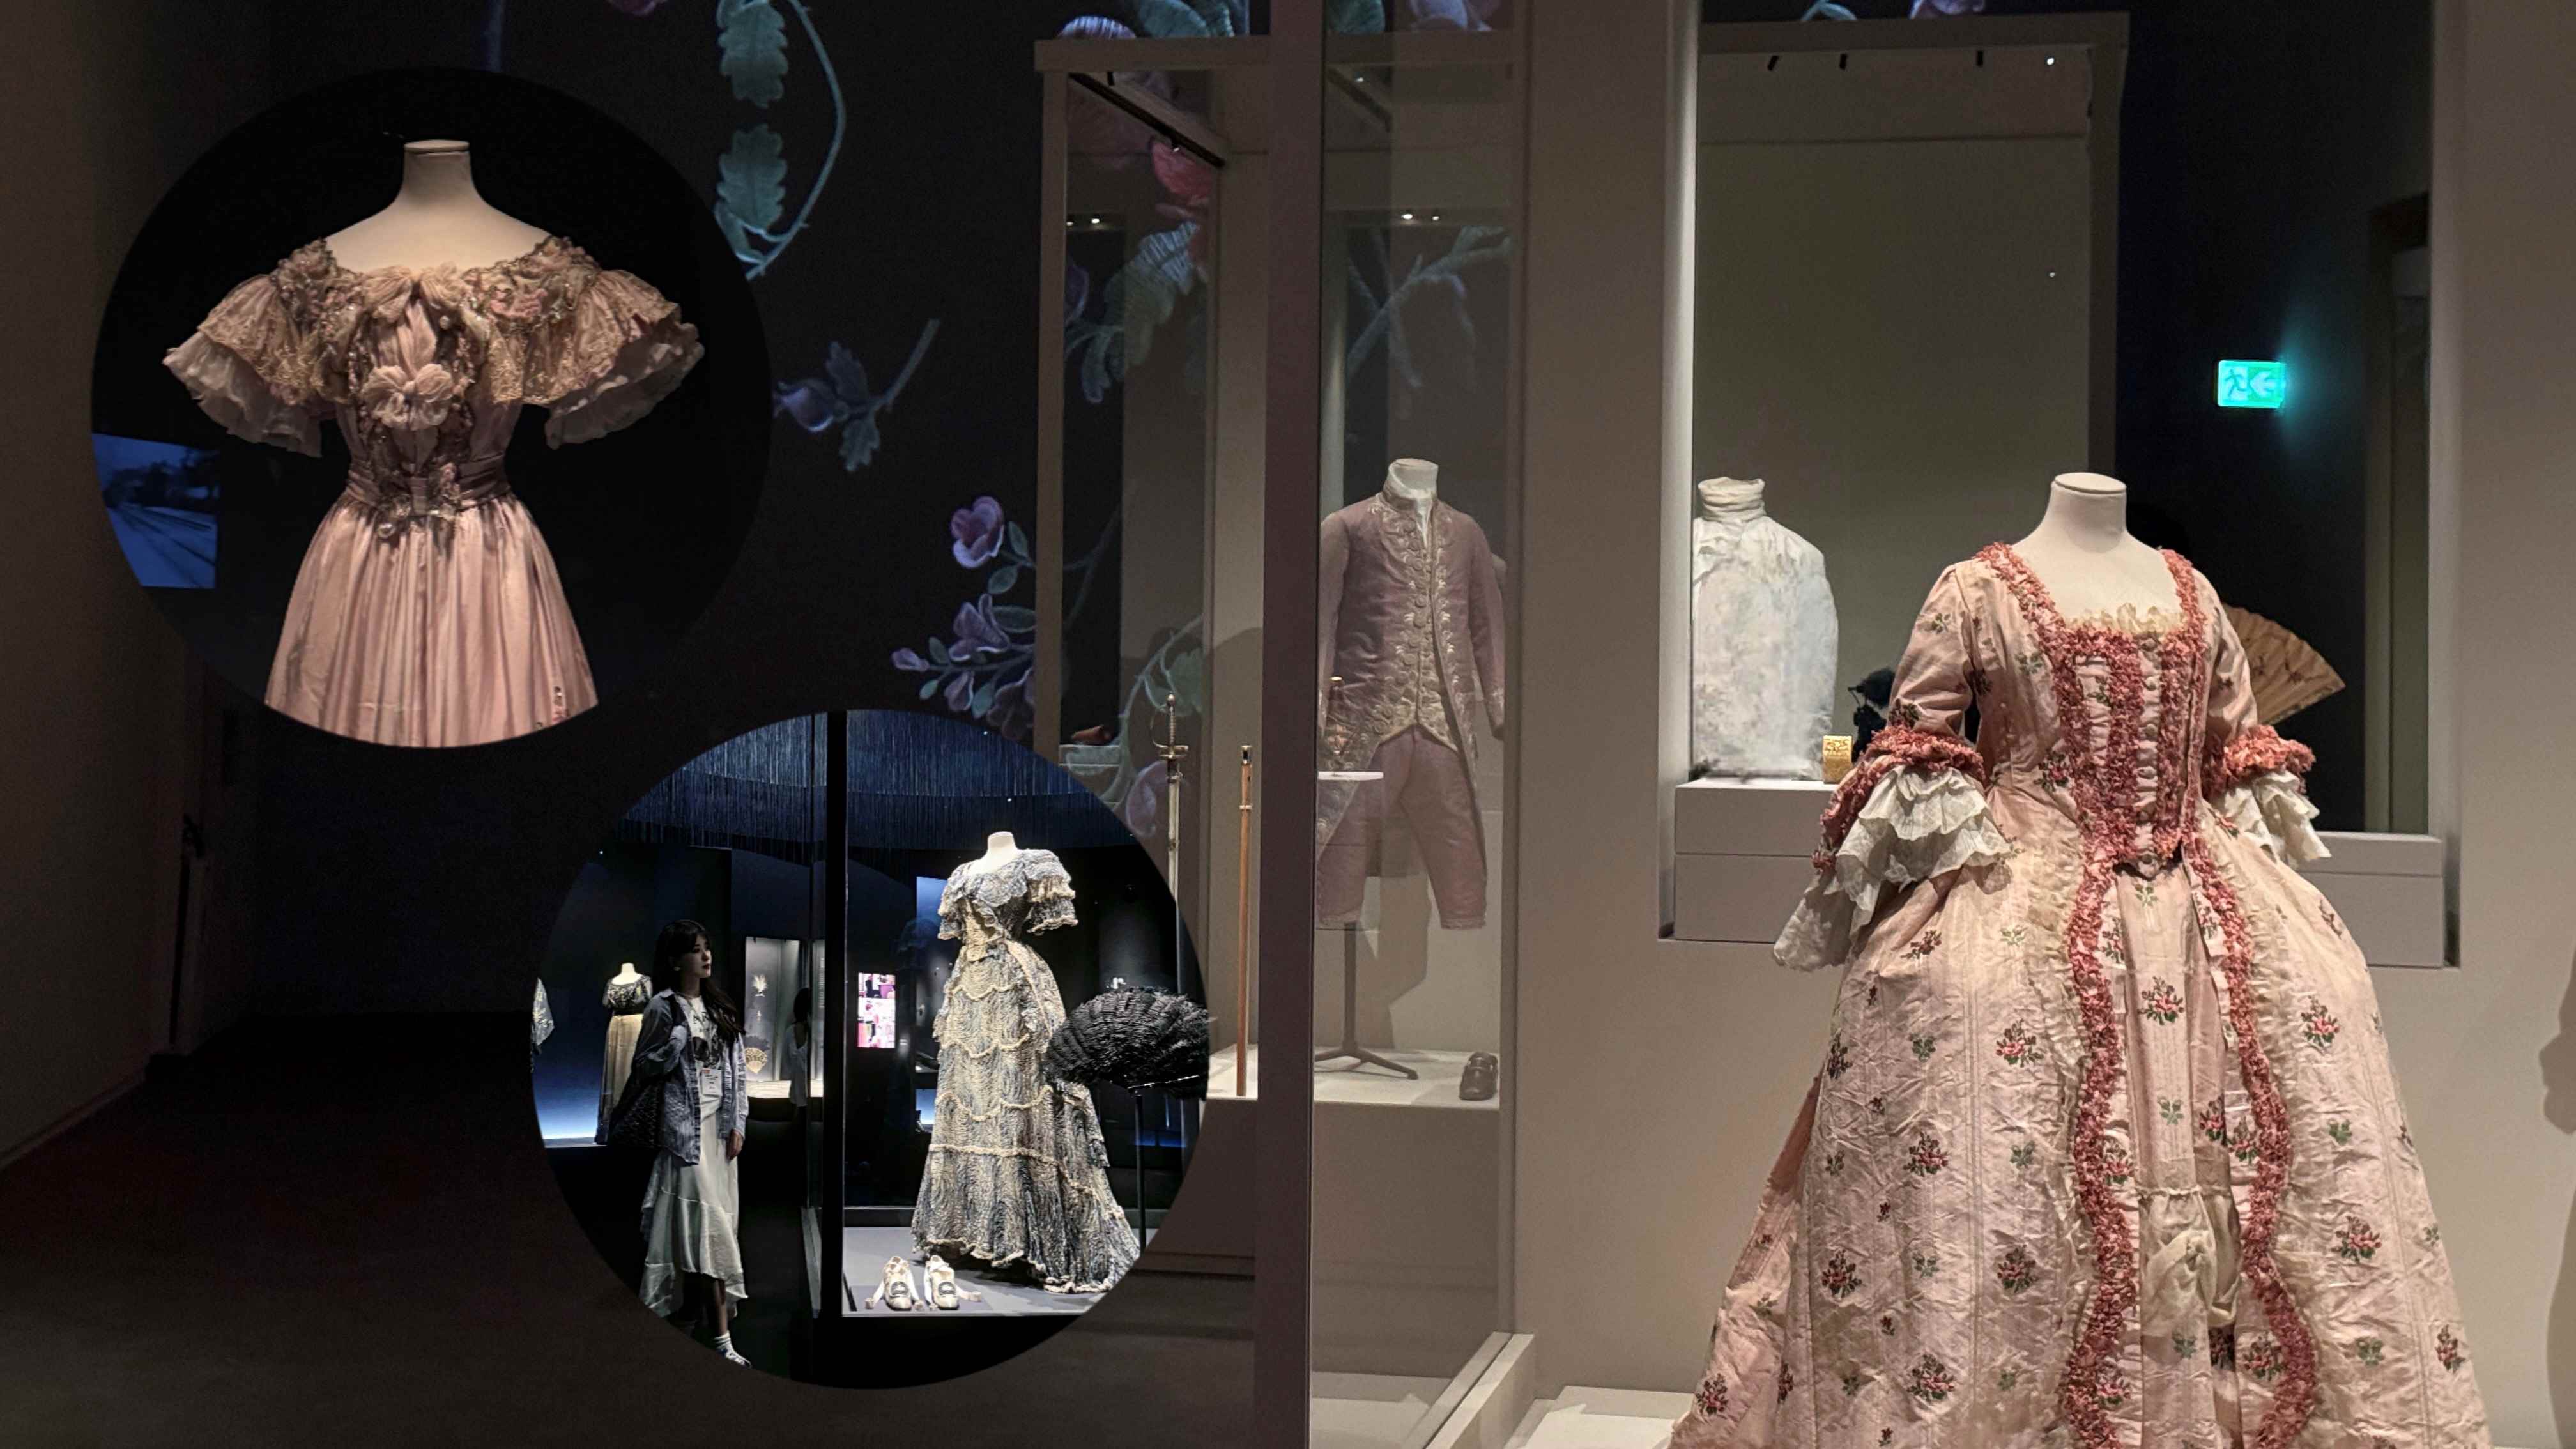 有片|【展覽】香港故宮法國時尚歷史展 探索百年時尚演變